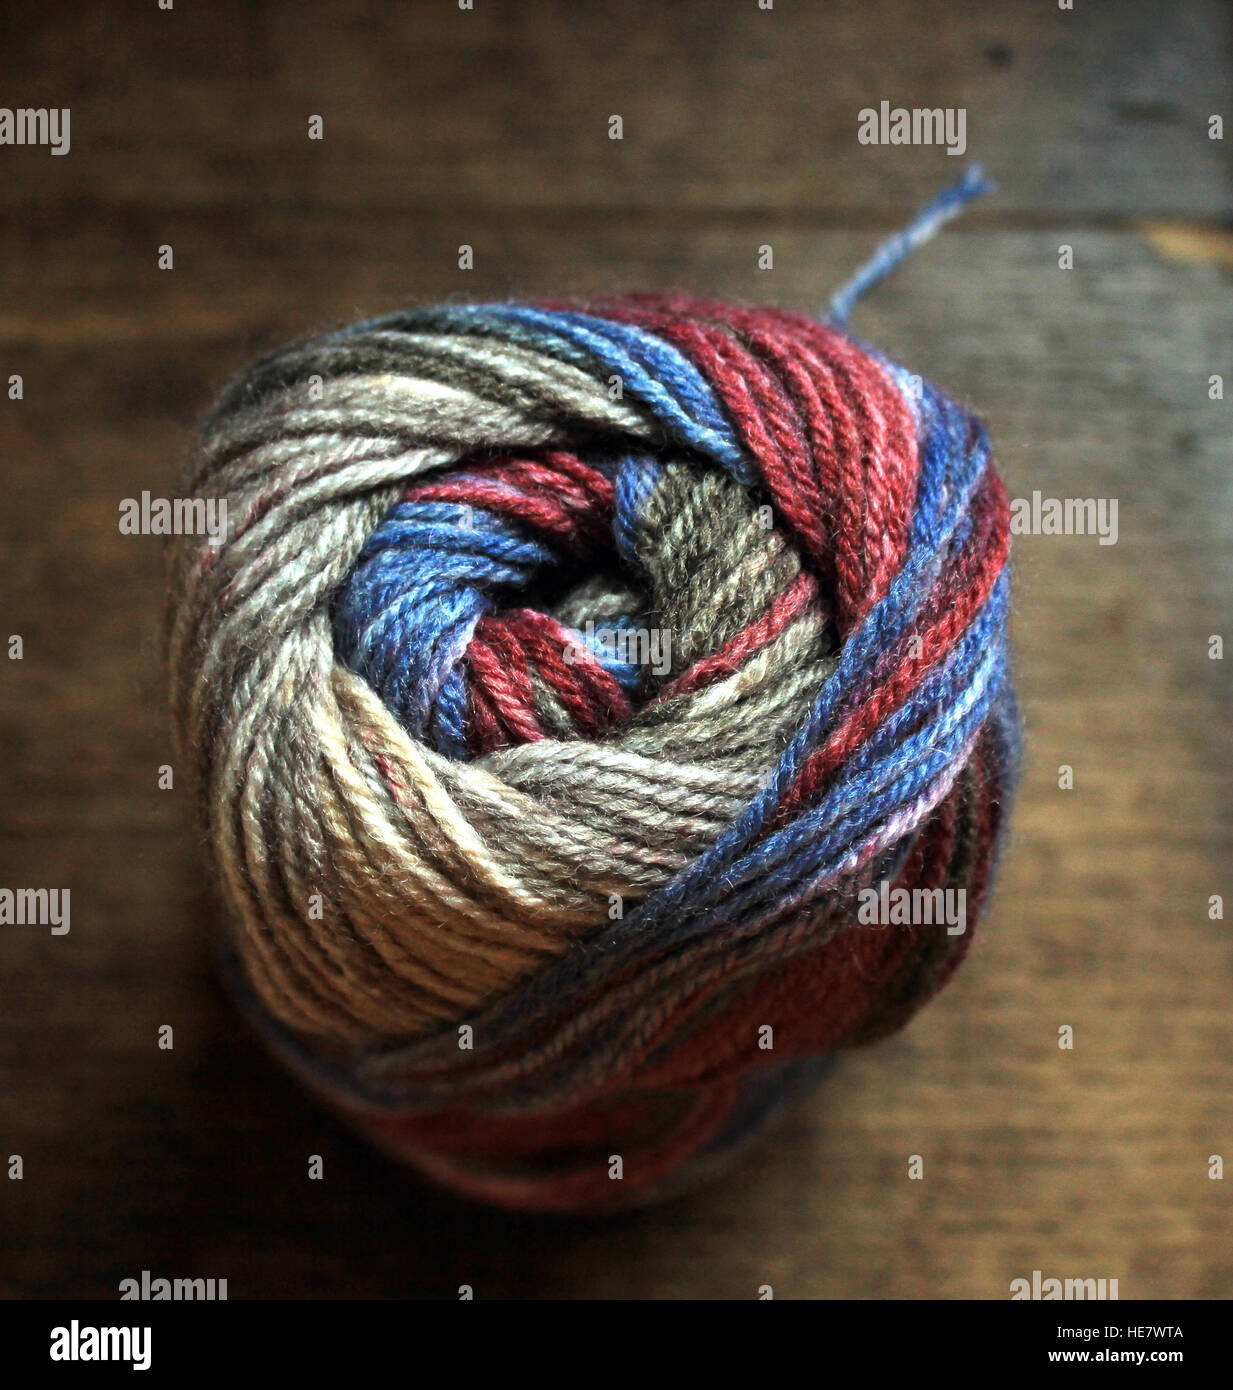 Ein Ball von Hand stricken Garn in den Farben grau, blau und braun im Bild aus der Ende guten Thread Definition. Stockfoto